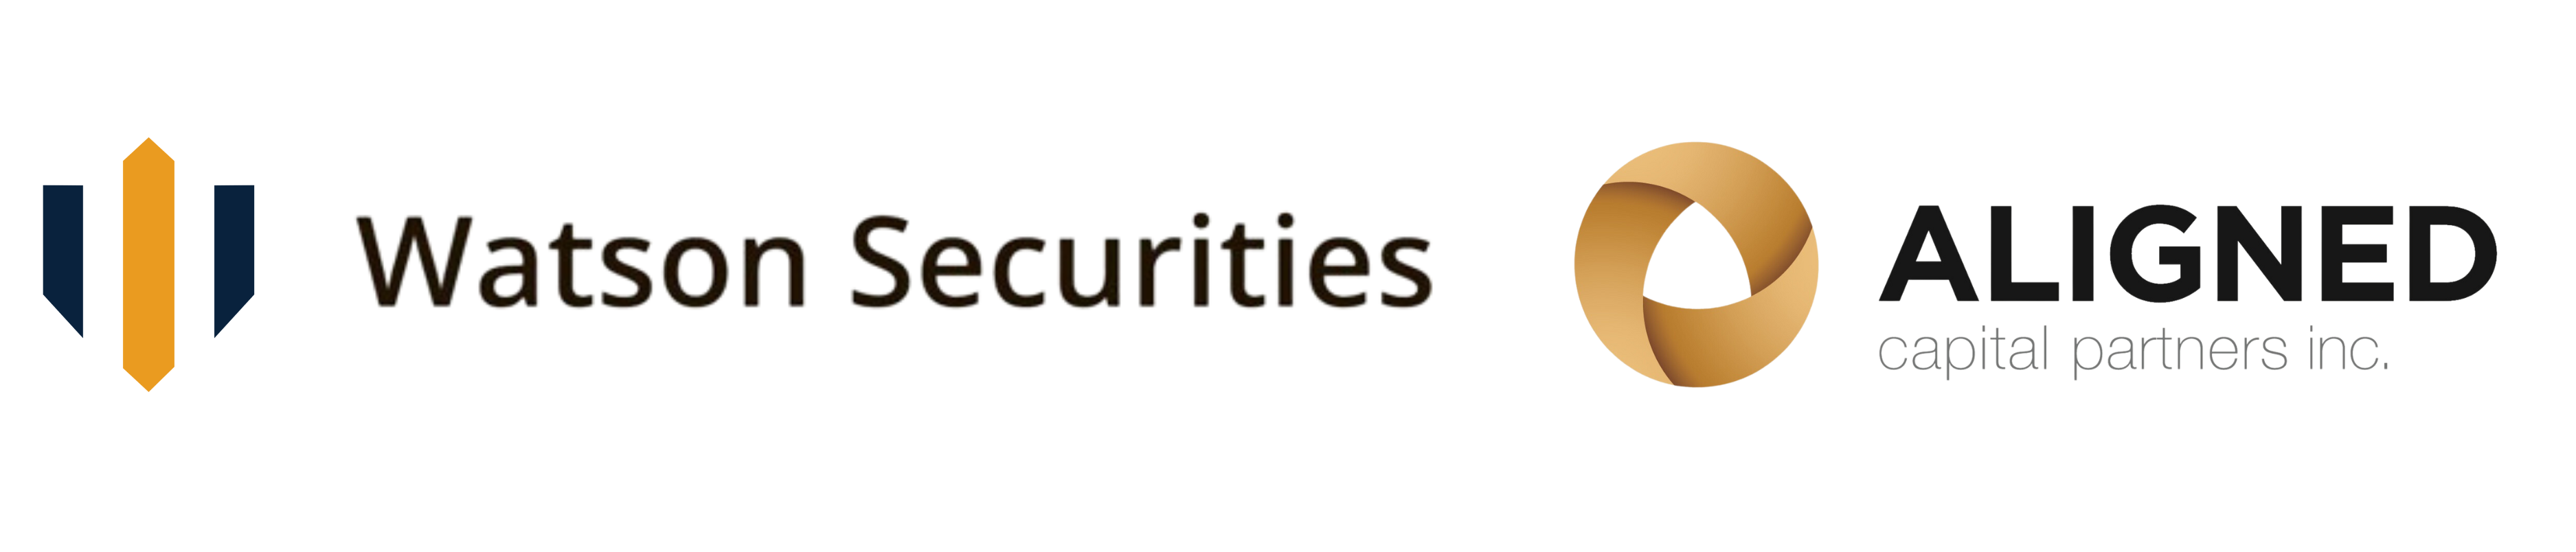 Watson Securities